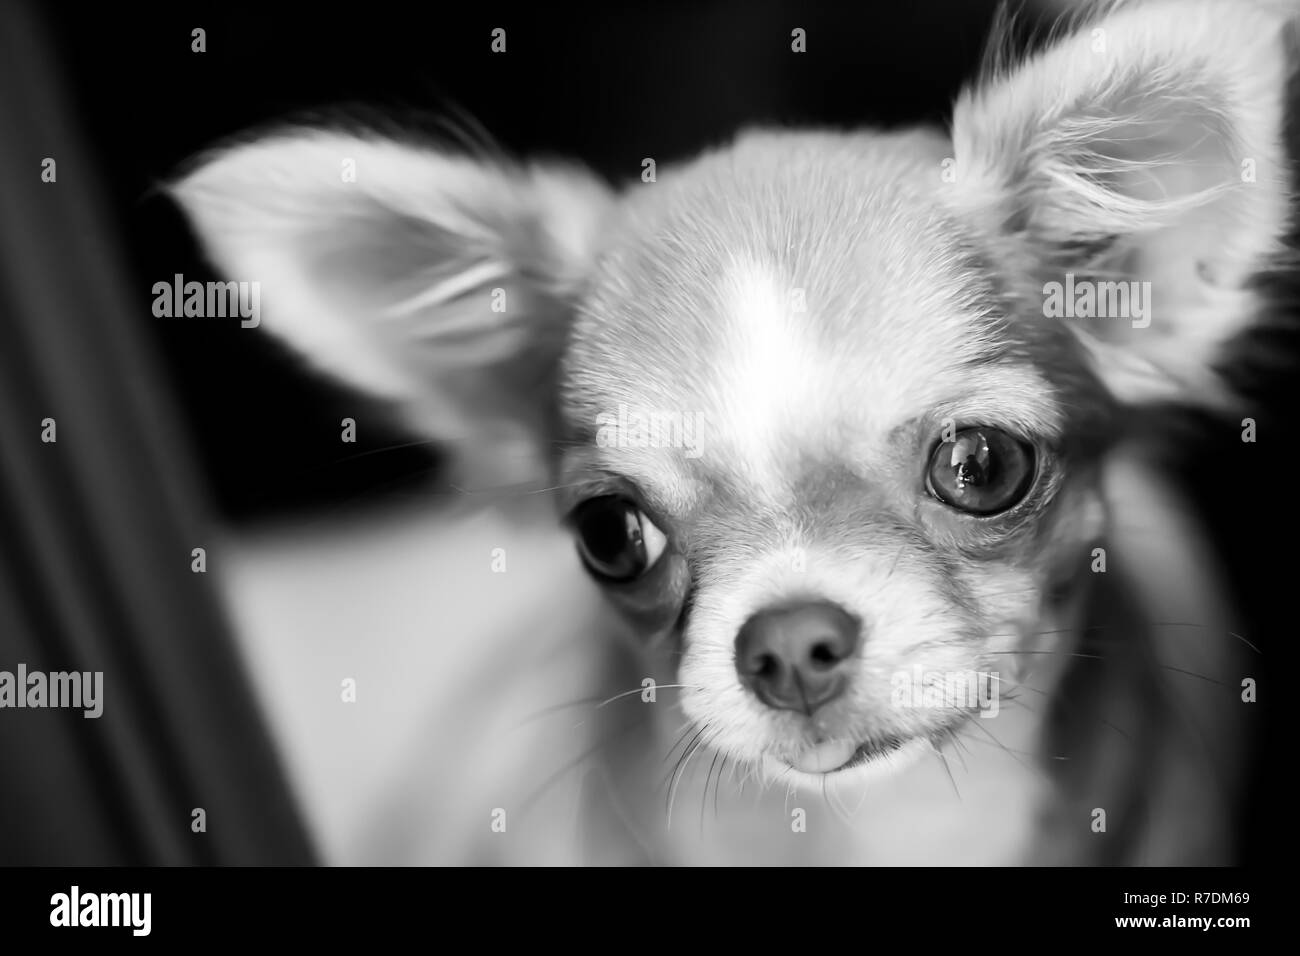 Chihuahua Langhaar Wandtattoo Kopf Wandsticker Deko Wandbild Wanddesign Wandgestaltung Tattoo Hunde Wandtattoo De Dog Stencil Chihuahua Art Dog Drawing